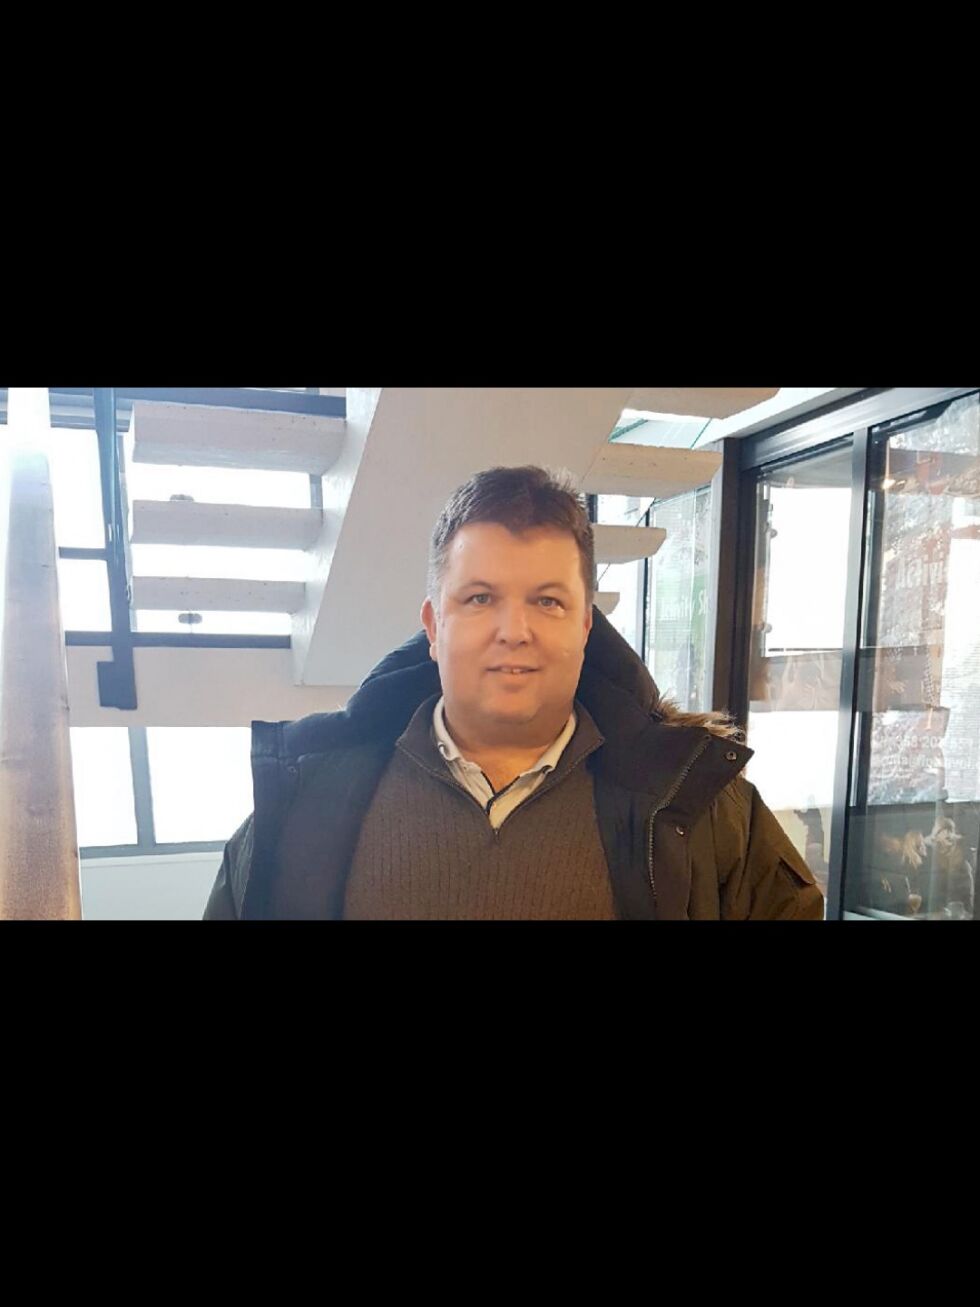 Bedriftsrådgiver Morten Ballari i Sápmi næringshage samt Tana og Nesseby næringsforening   har nå startet en kampanje der de oppfordrer folk om å handle lokalt.
 Foto: Tom Hardy